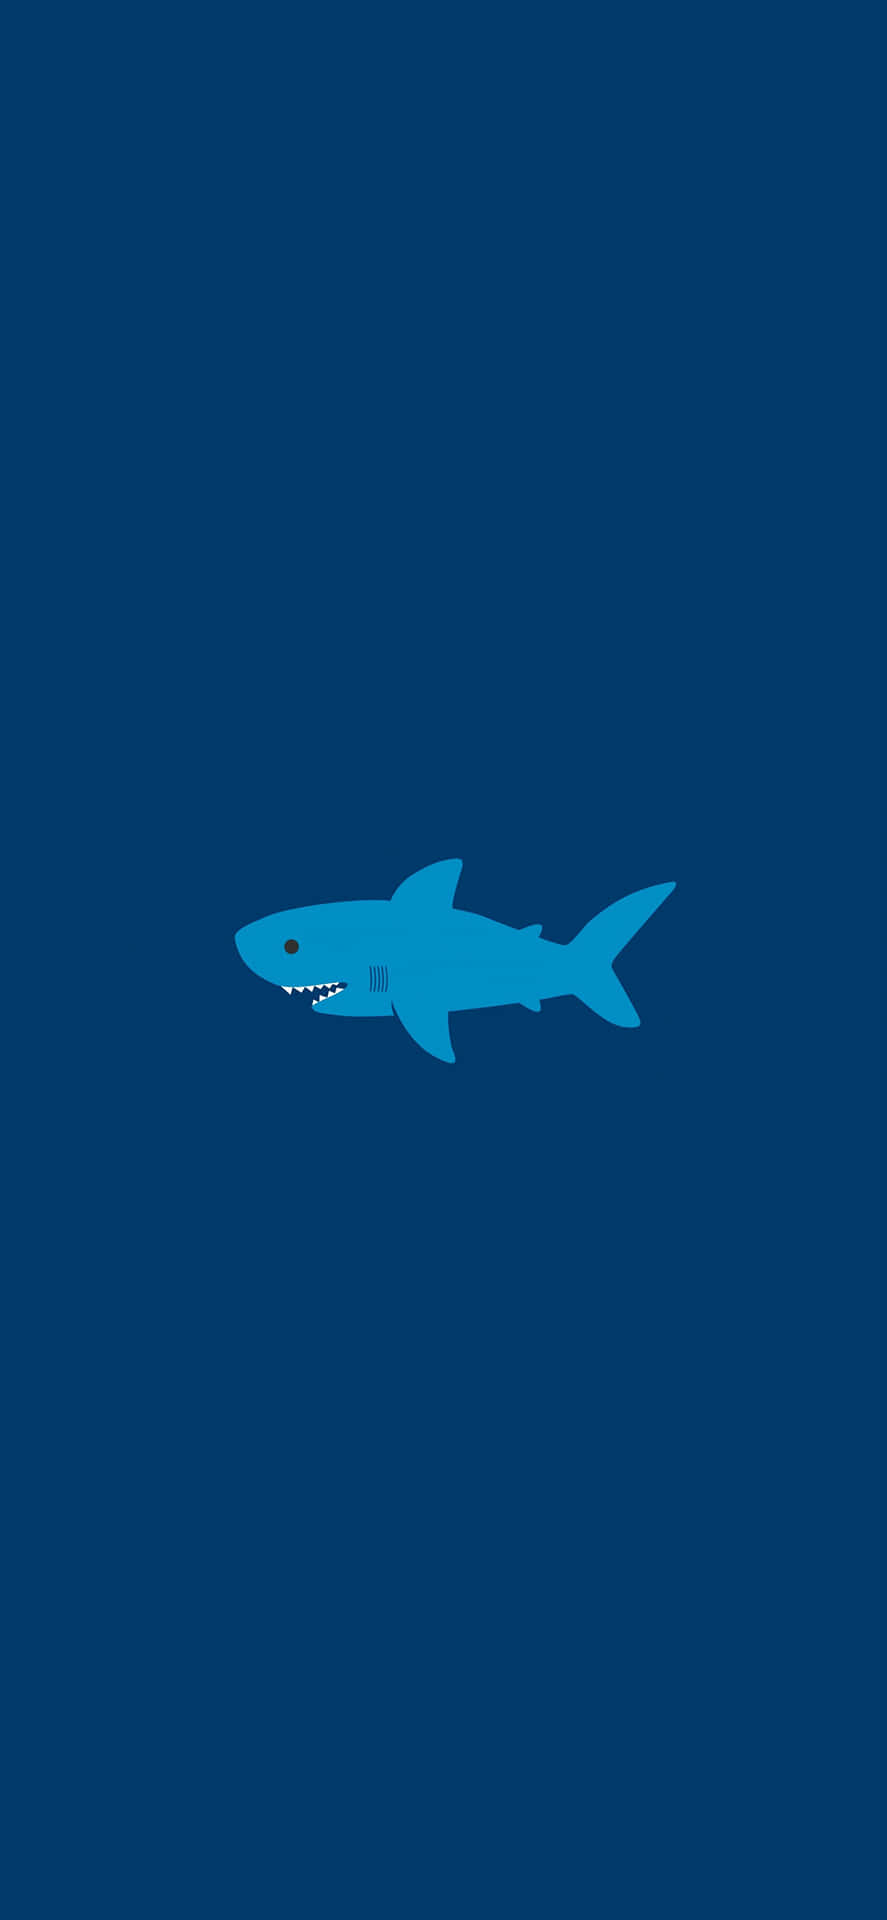 Vis din stil og skil dig ud med denne fantastiske Shark iPhone! Wallpaper